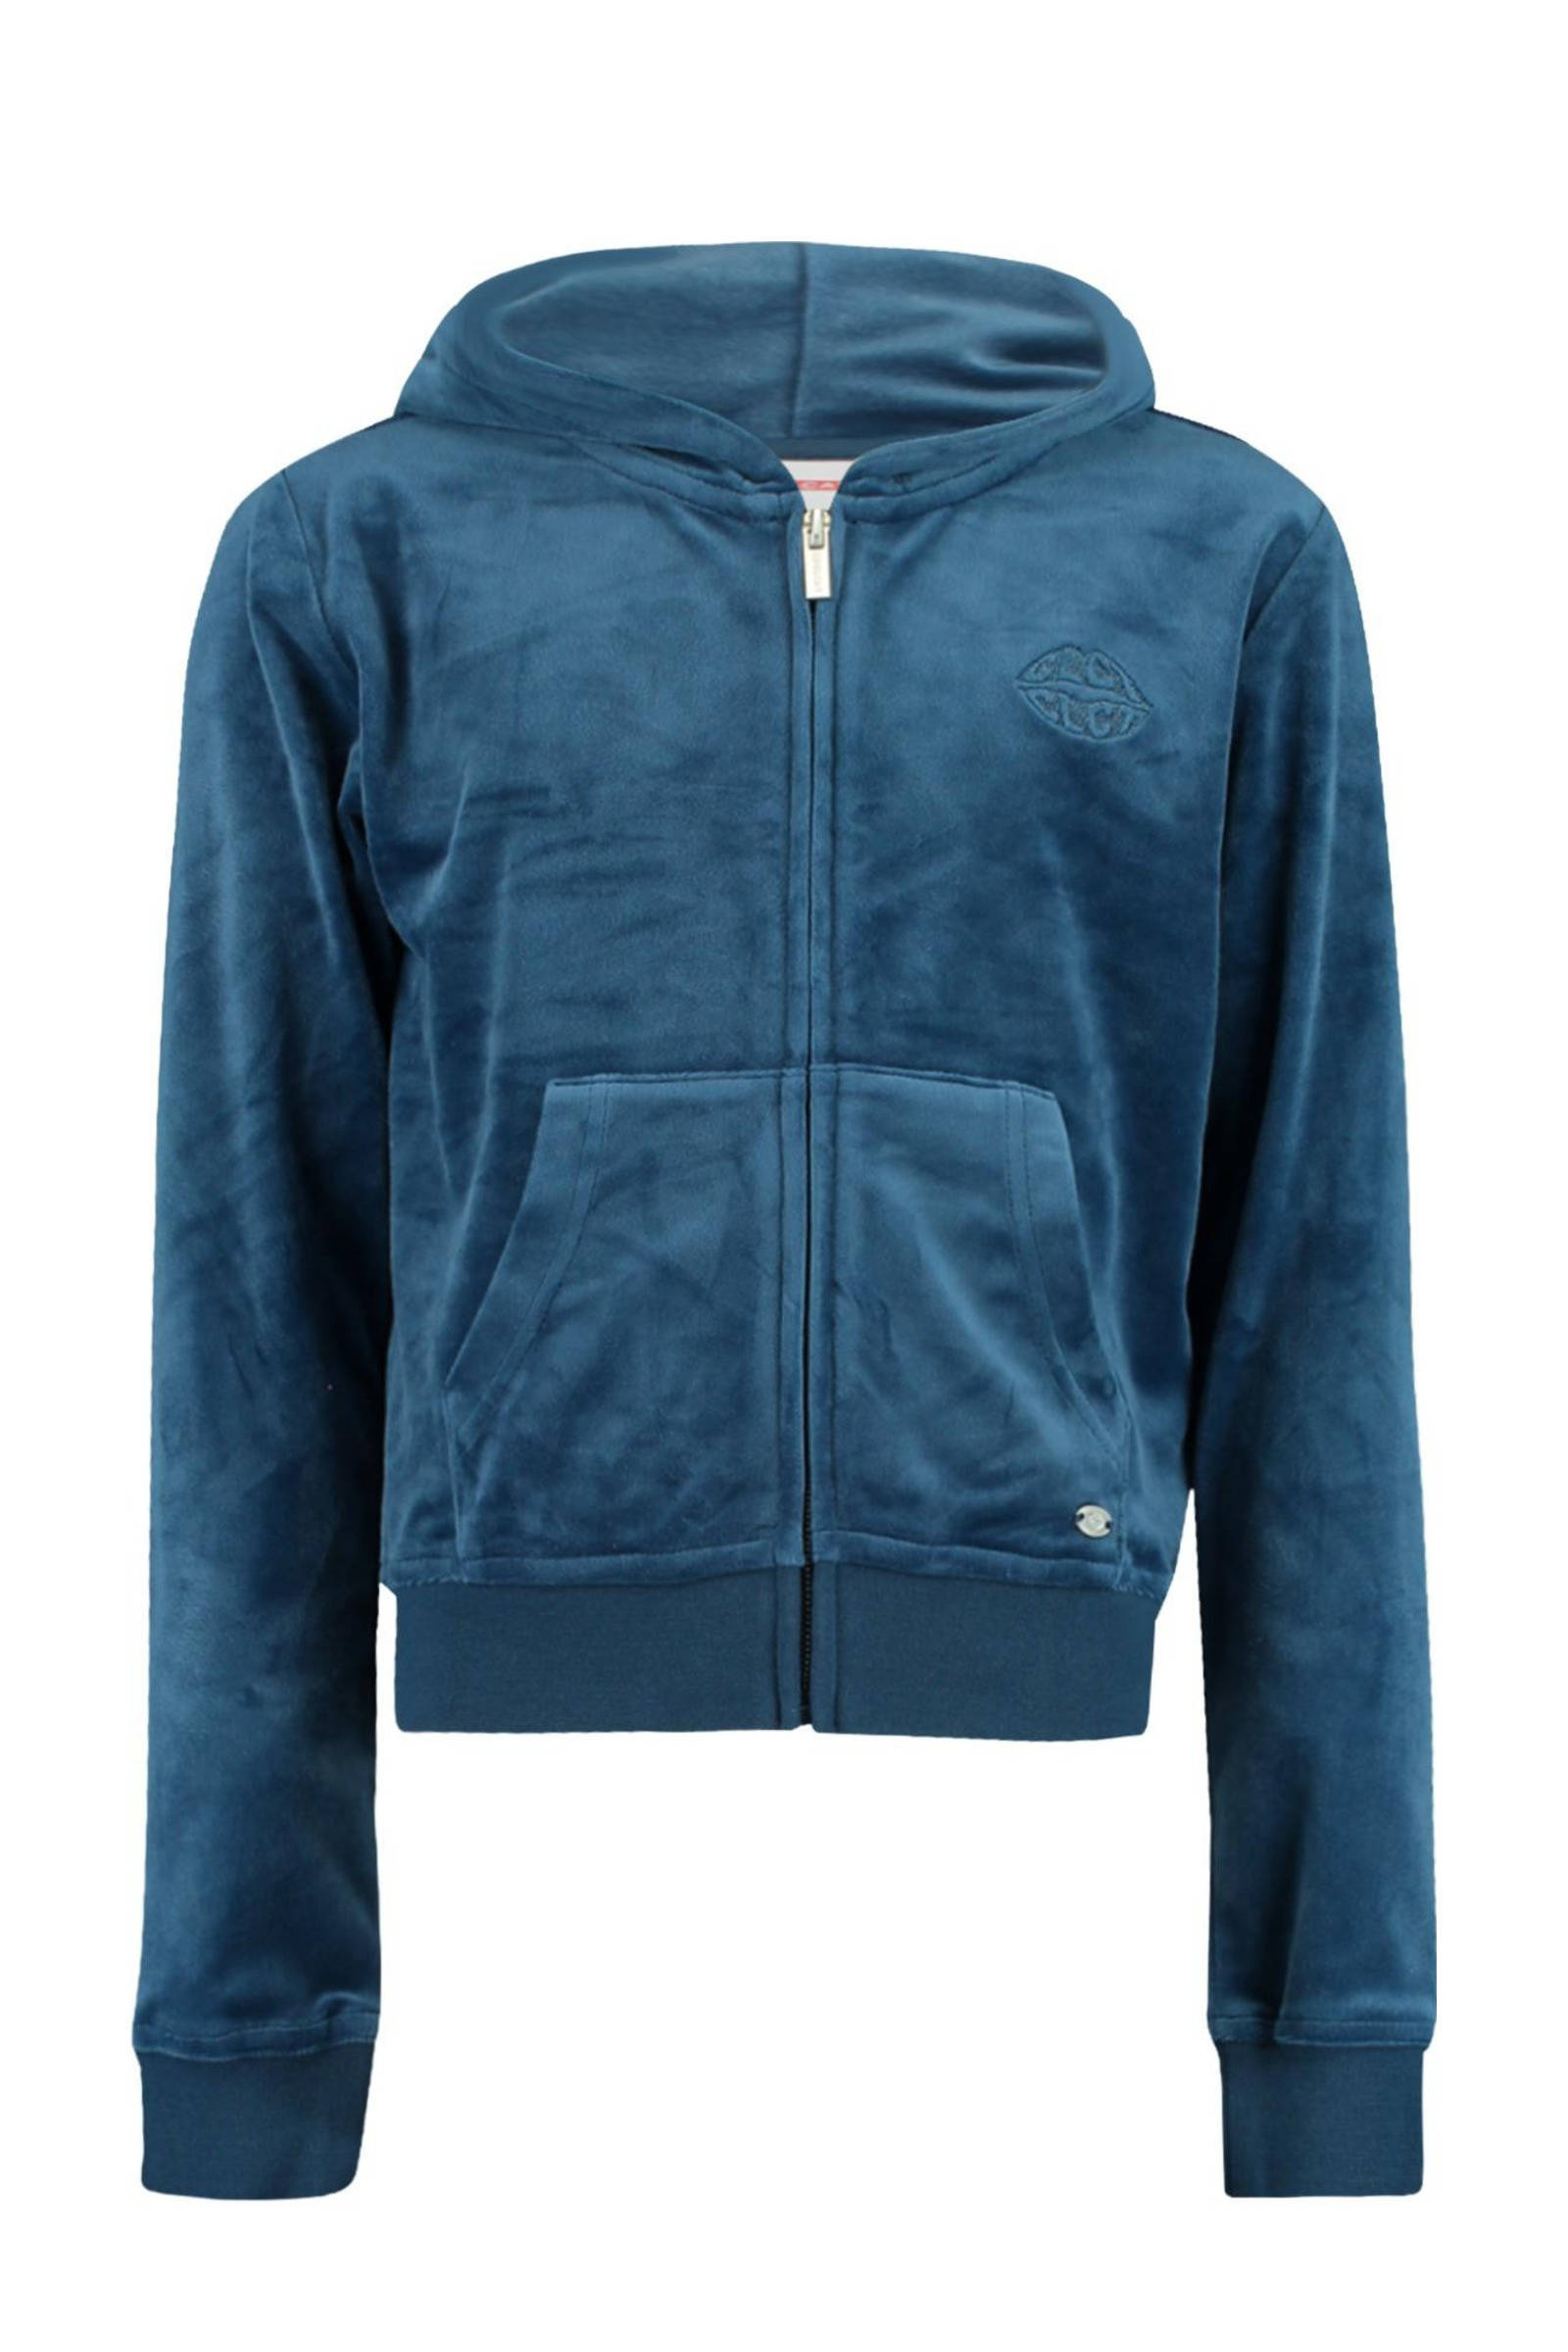 CoolCat Junior fluwelen vest blauw online kopen